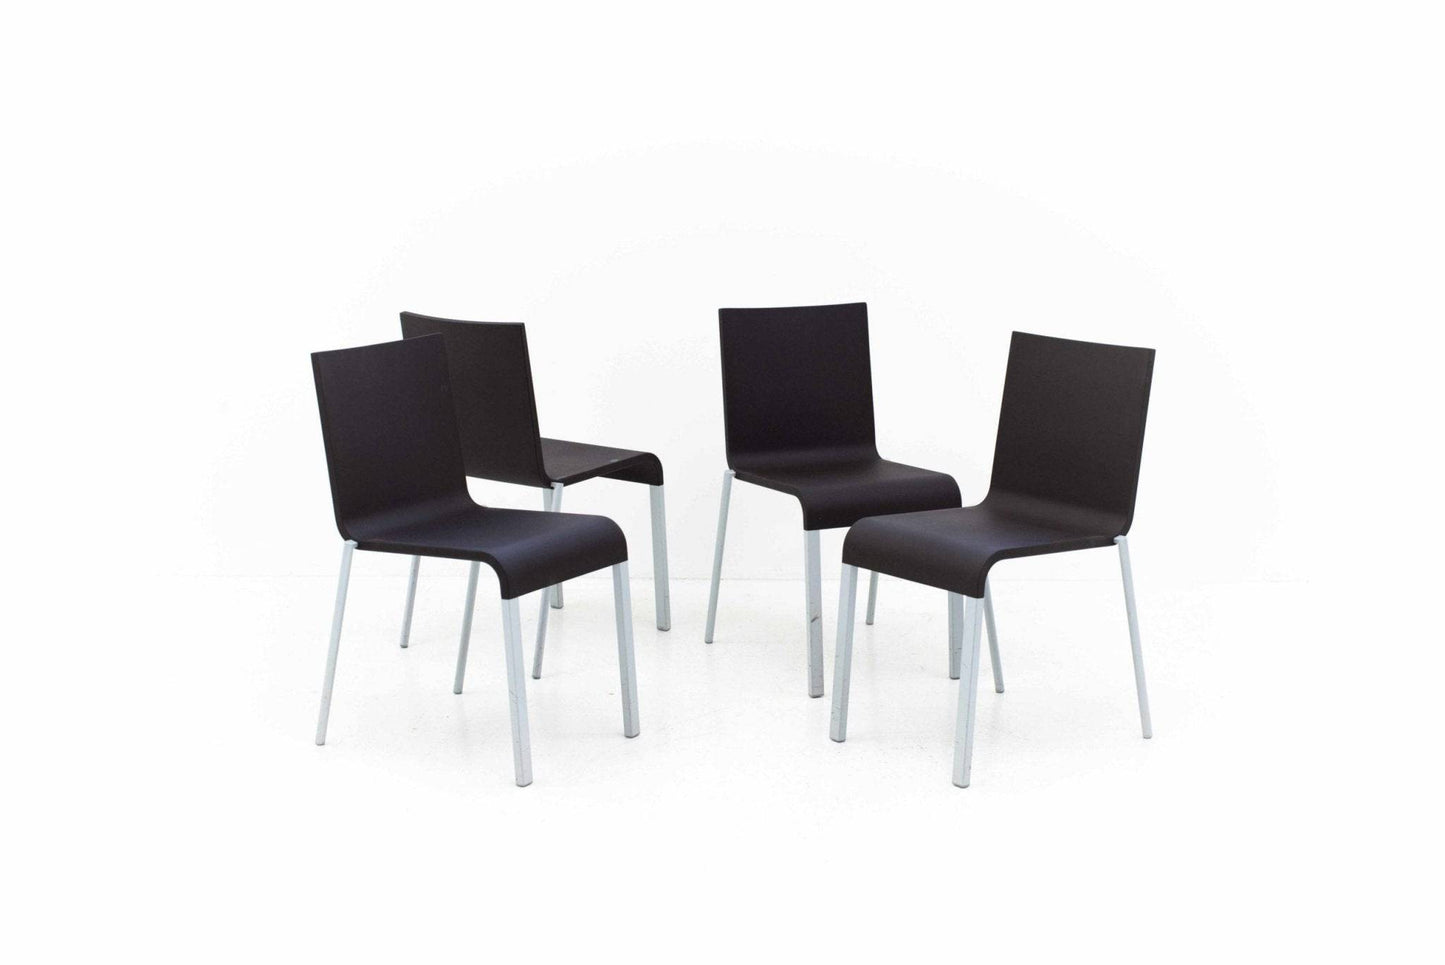 Maarten Van Severen .03 chairs from Vitra in dark brown